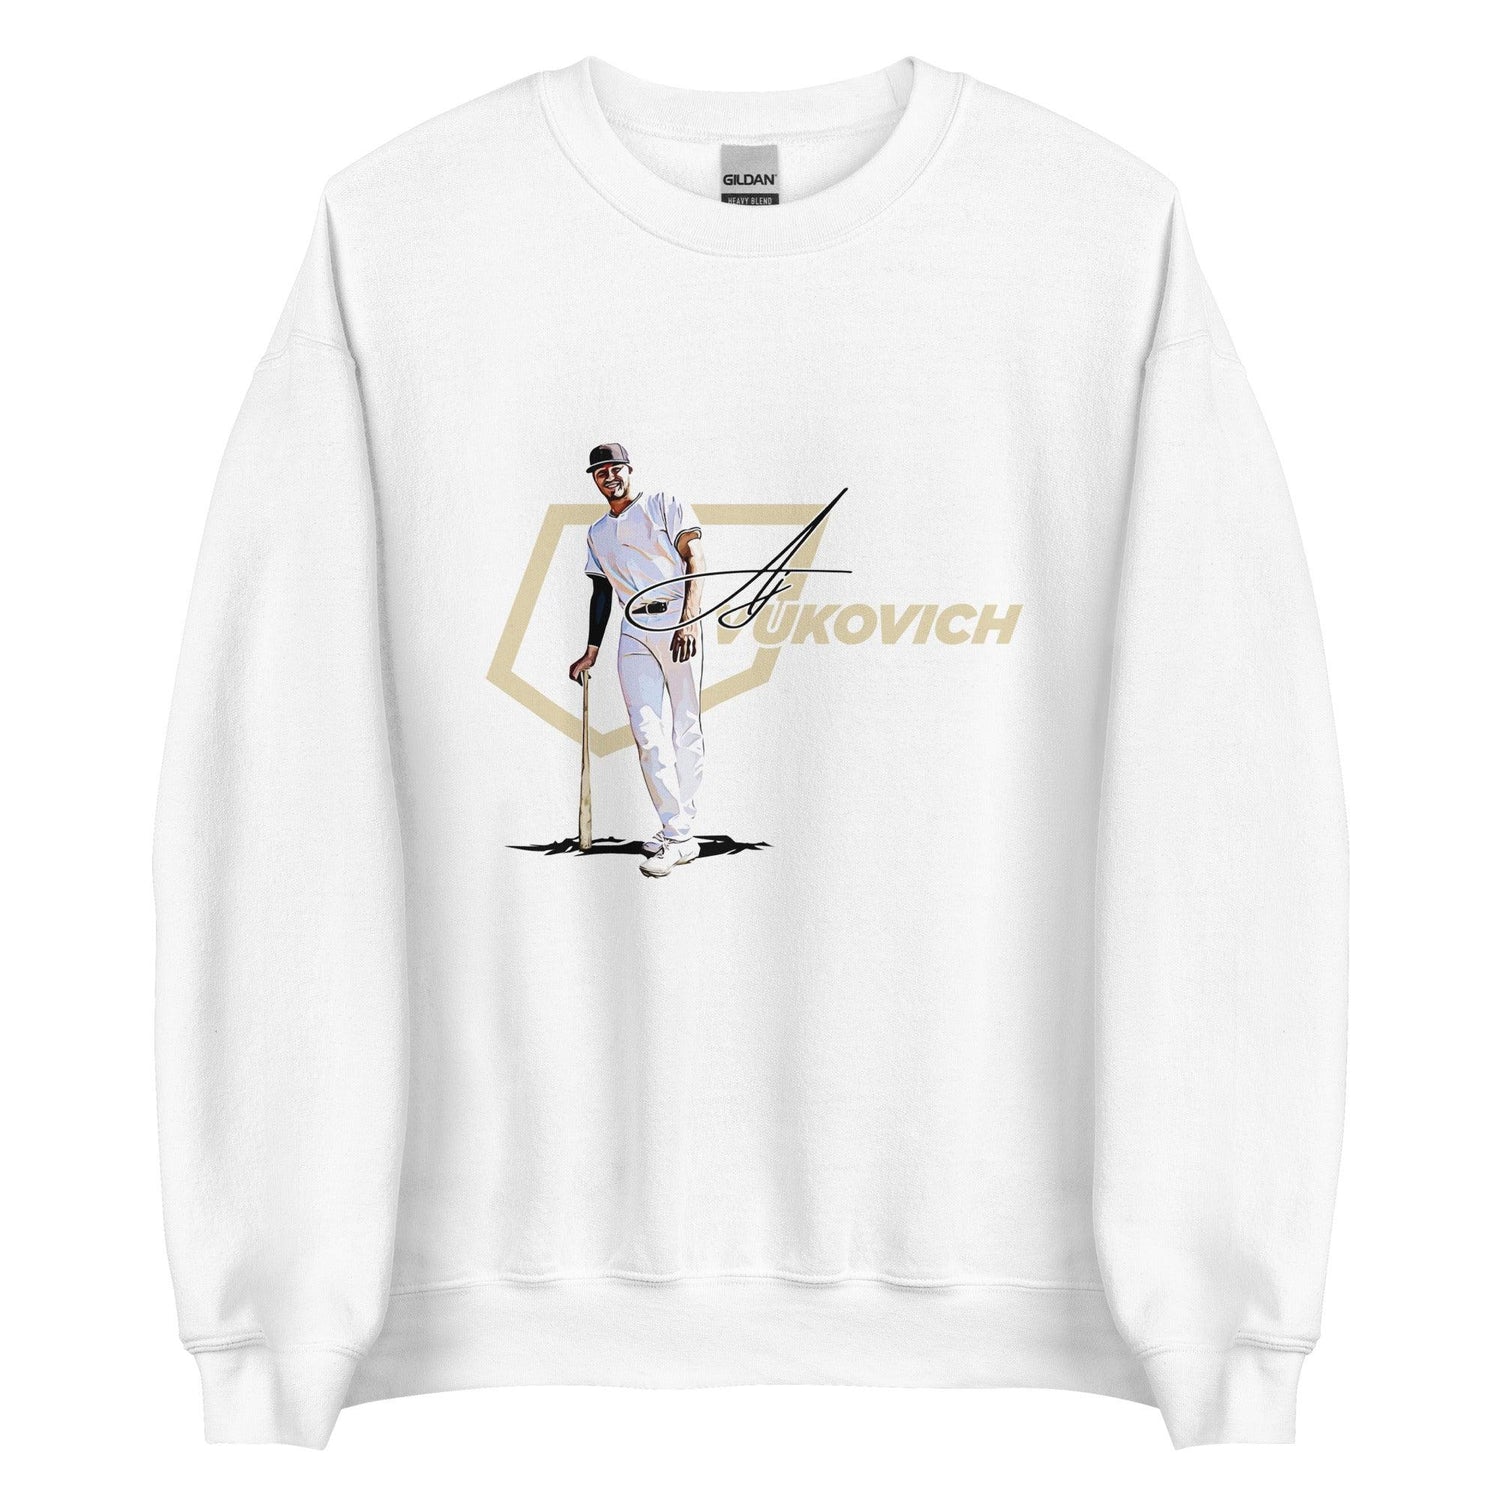 AJ Vukovich “Heritage” Sweatshirt - Fan Arch